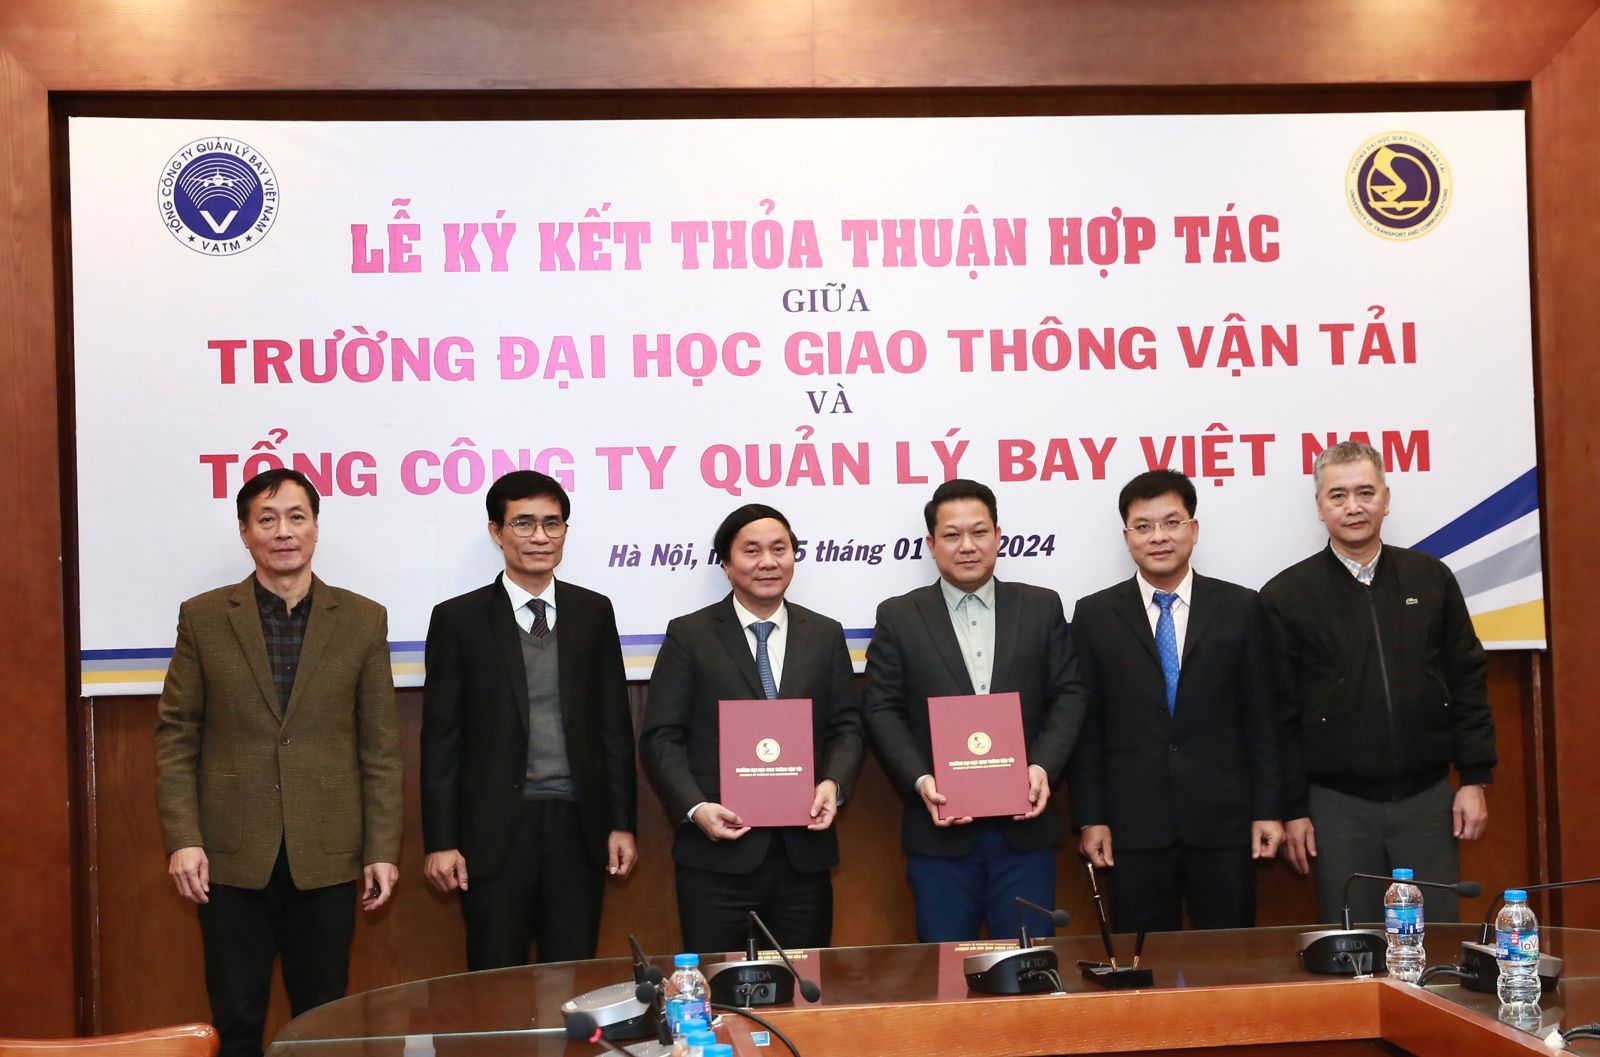 VATM và Trường Đại học Giao thông vận tải ký kết thỏa thuận hợp tác